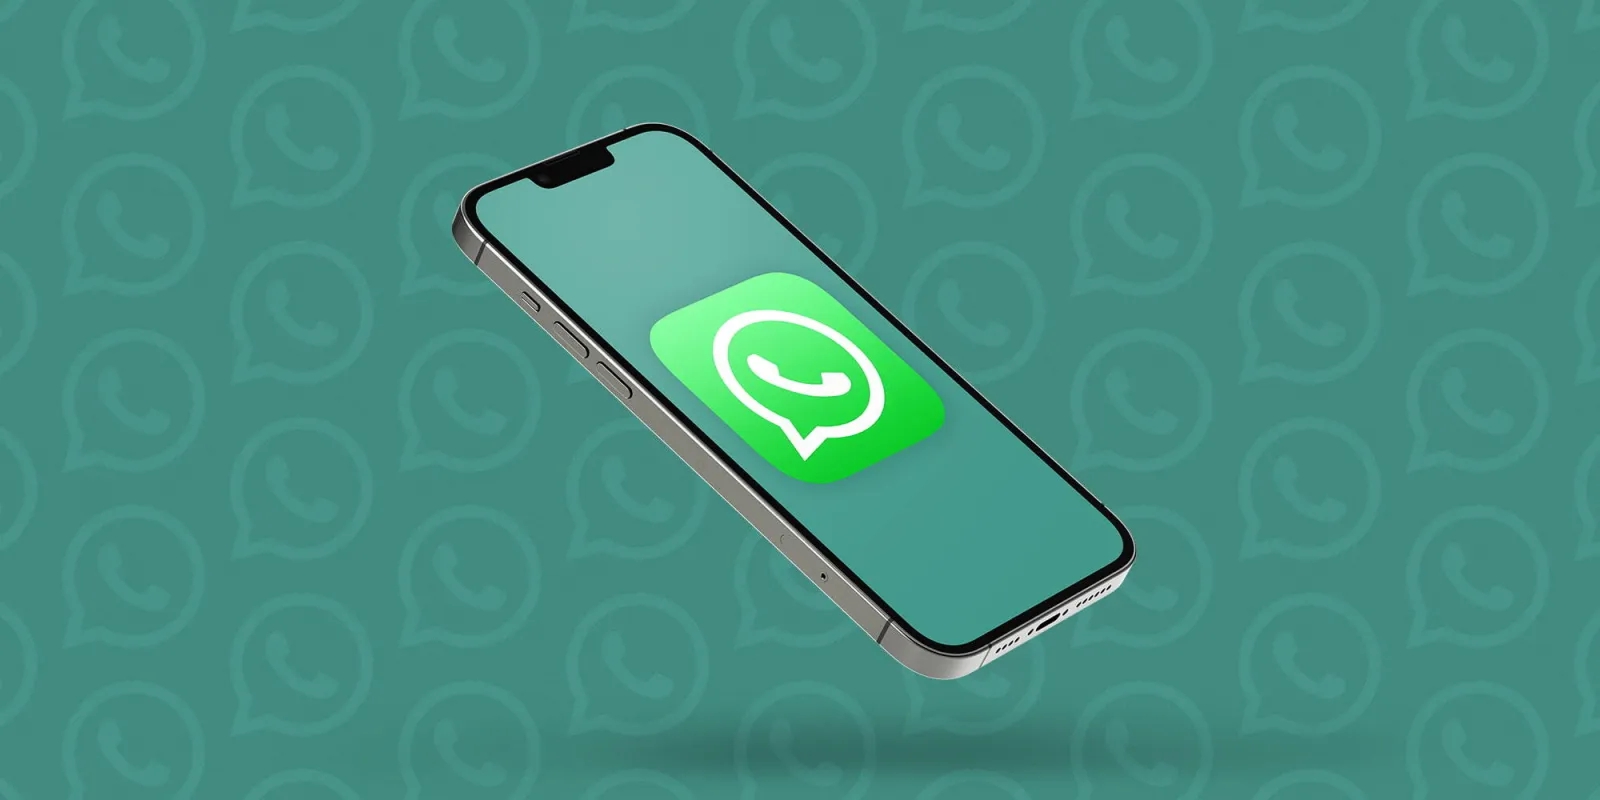 WhatsApp introduce una rivoluzionaria opzione per condividere i file. Ecco come funziona